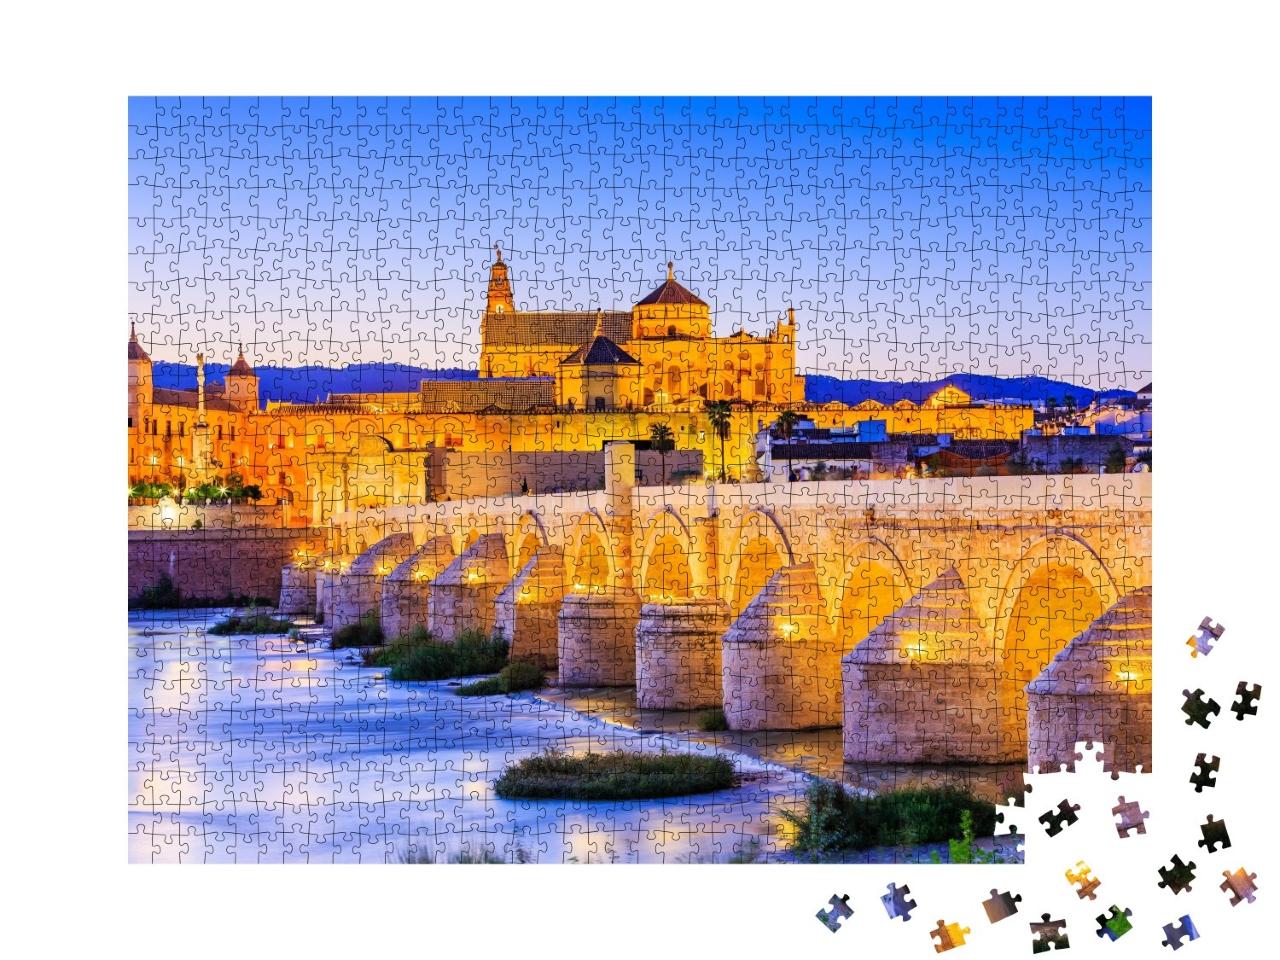 Puzzle de 1000 pièces « Cordoue : Pont romain sur le fleuve Guadalquivir vers la Grande Mosquée »